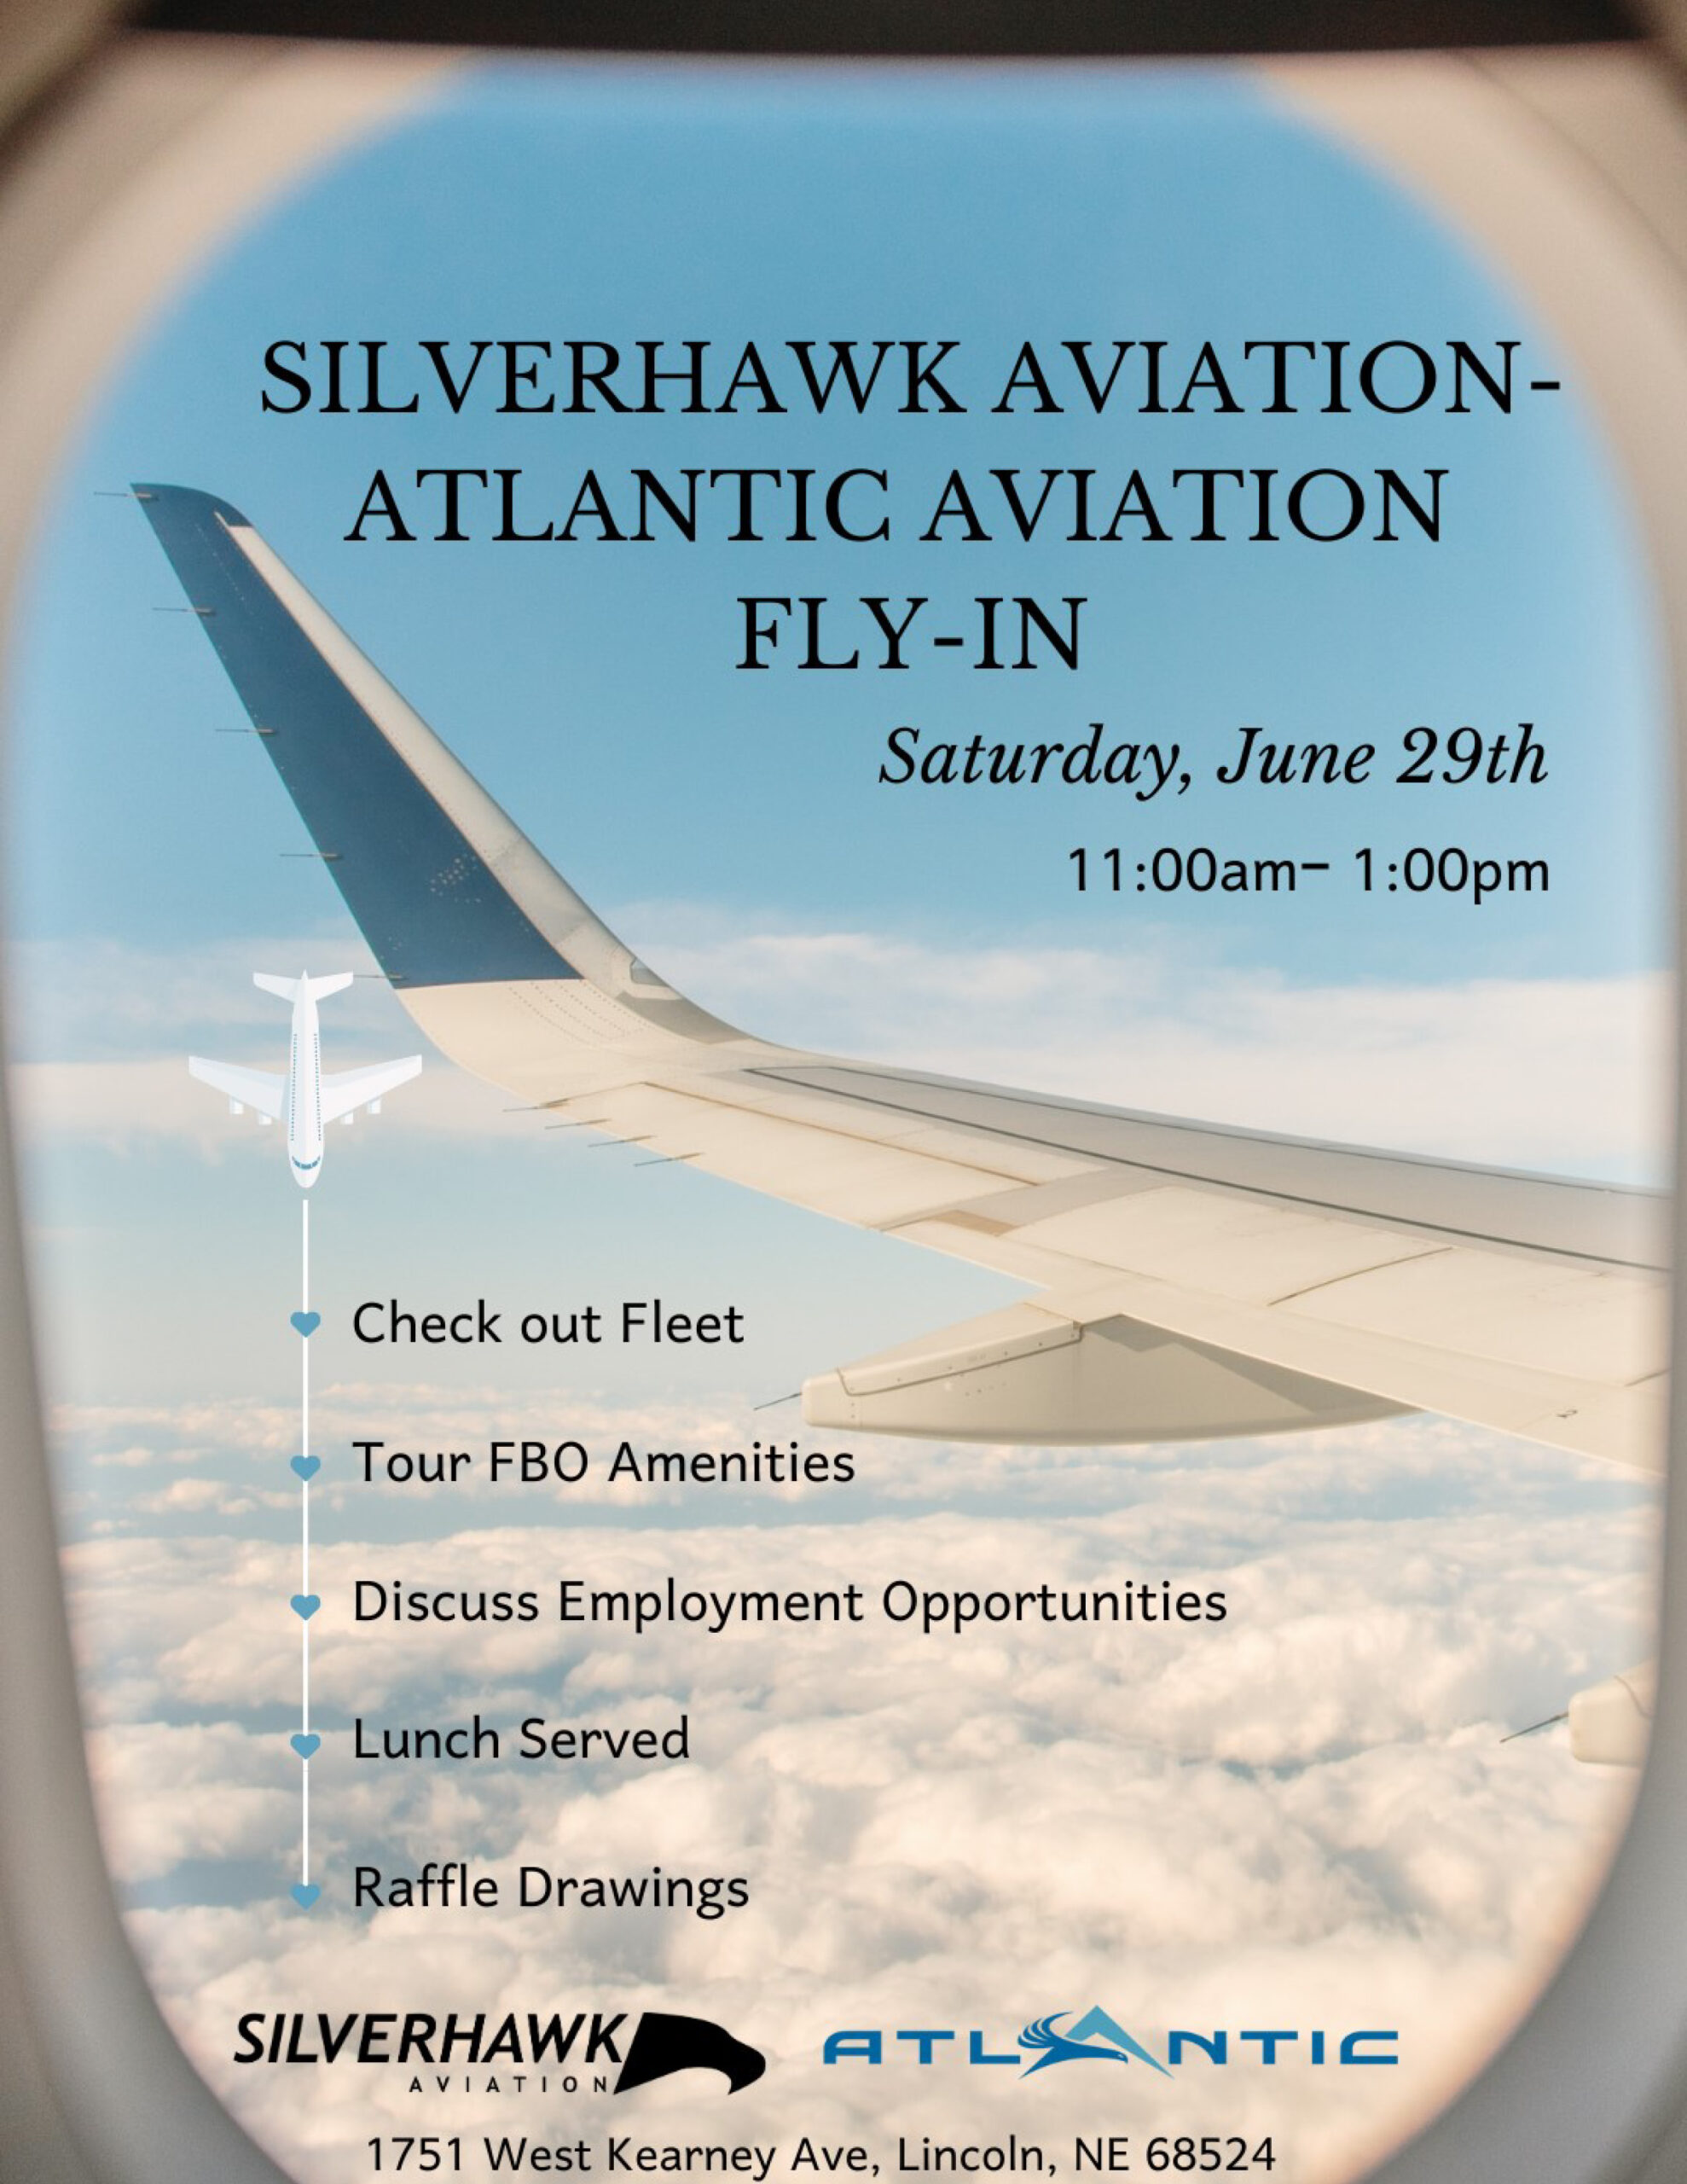 Silverhawk-Atlantic Fly-in